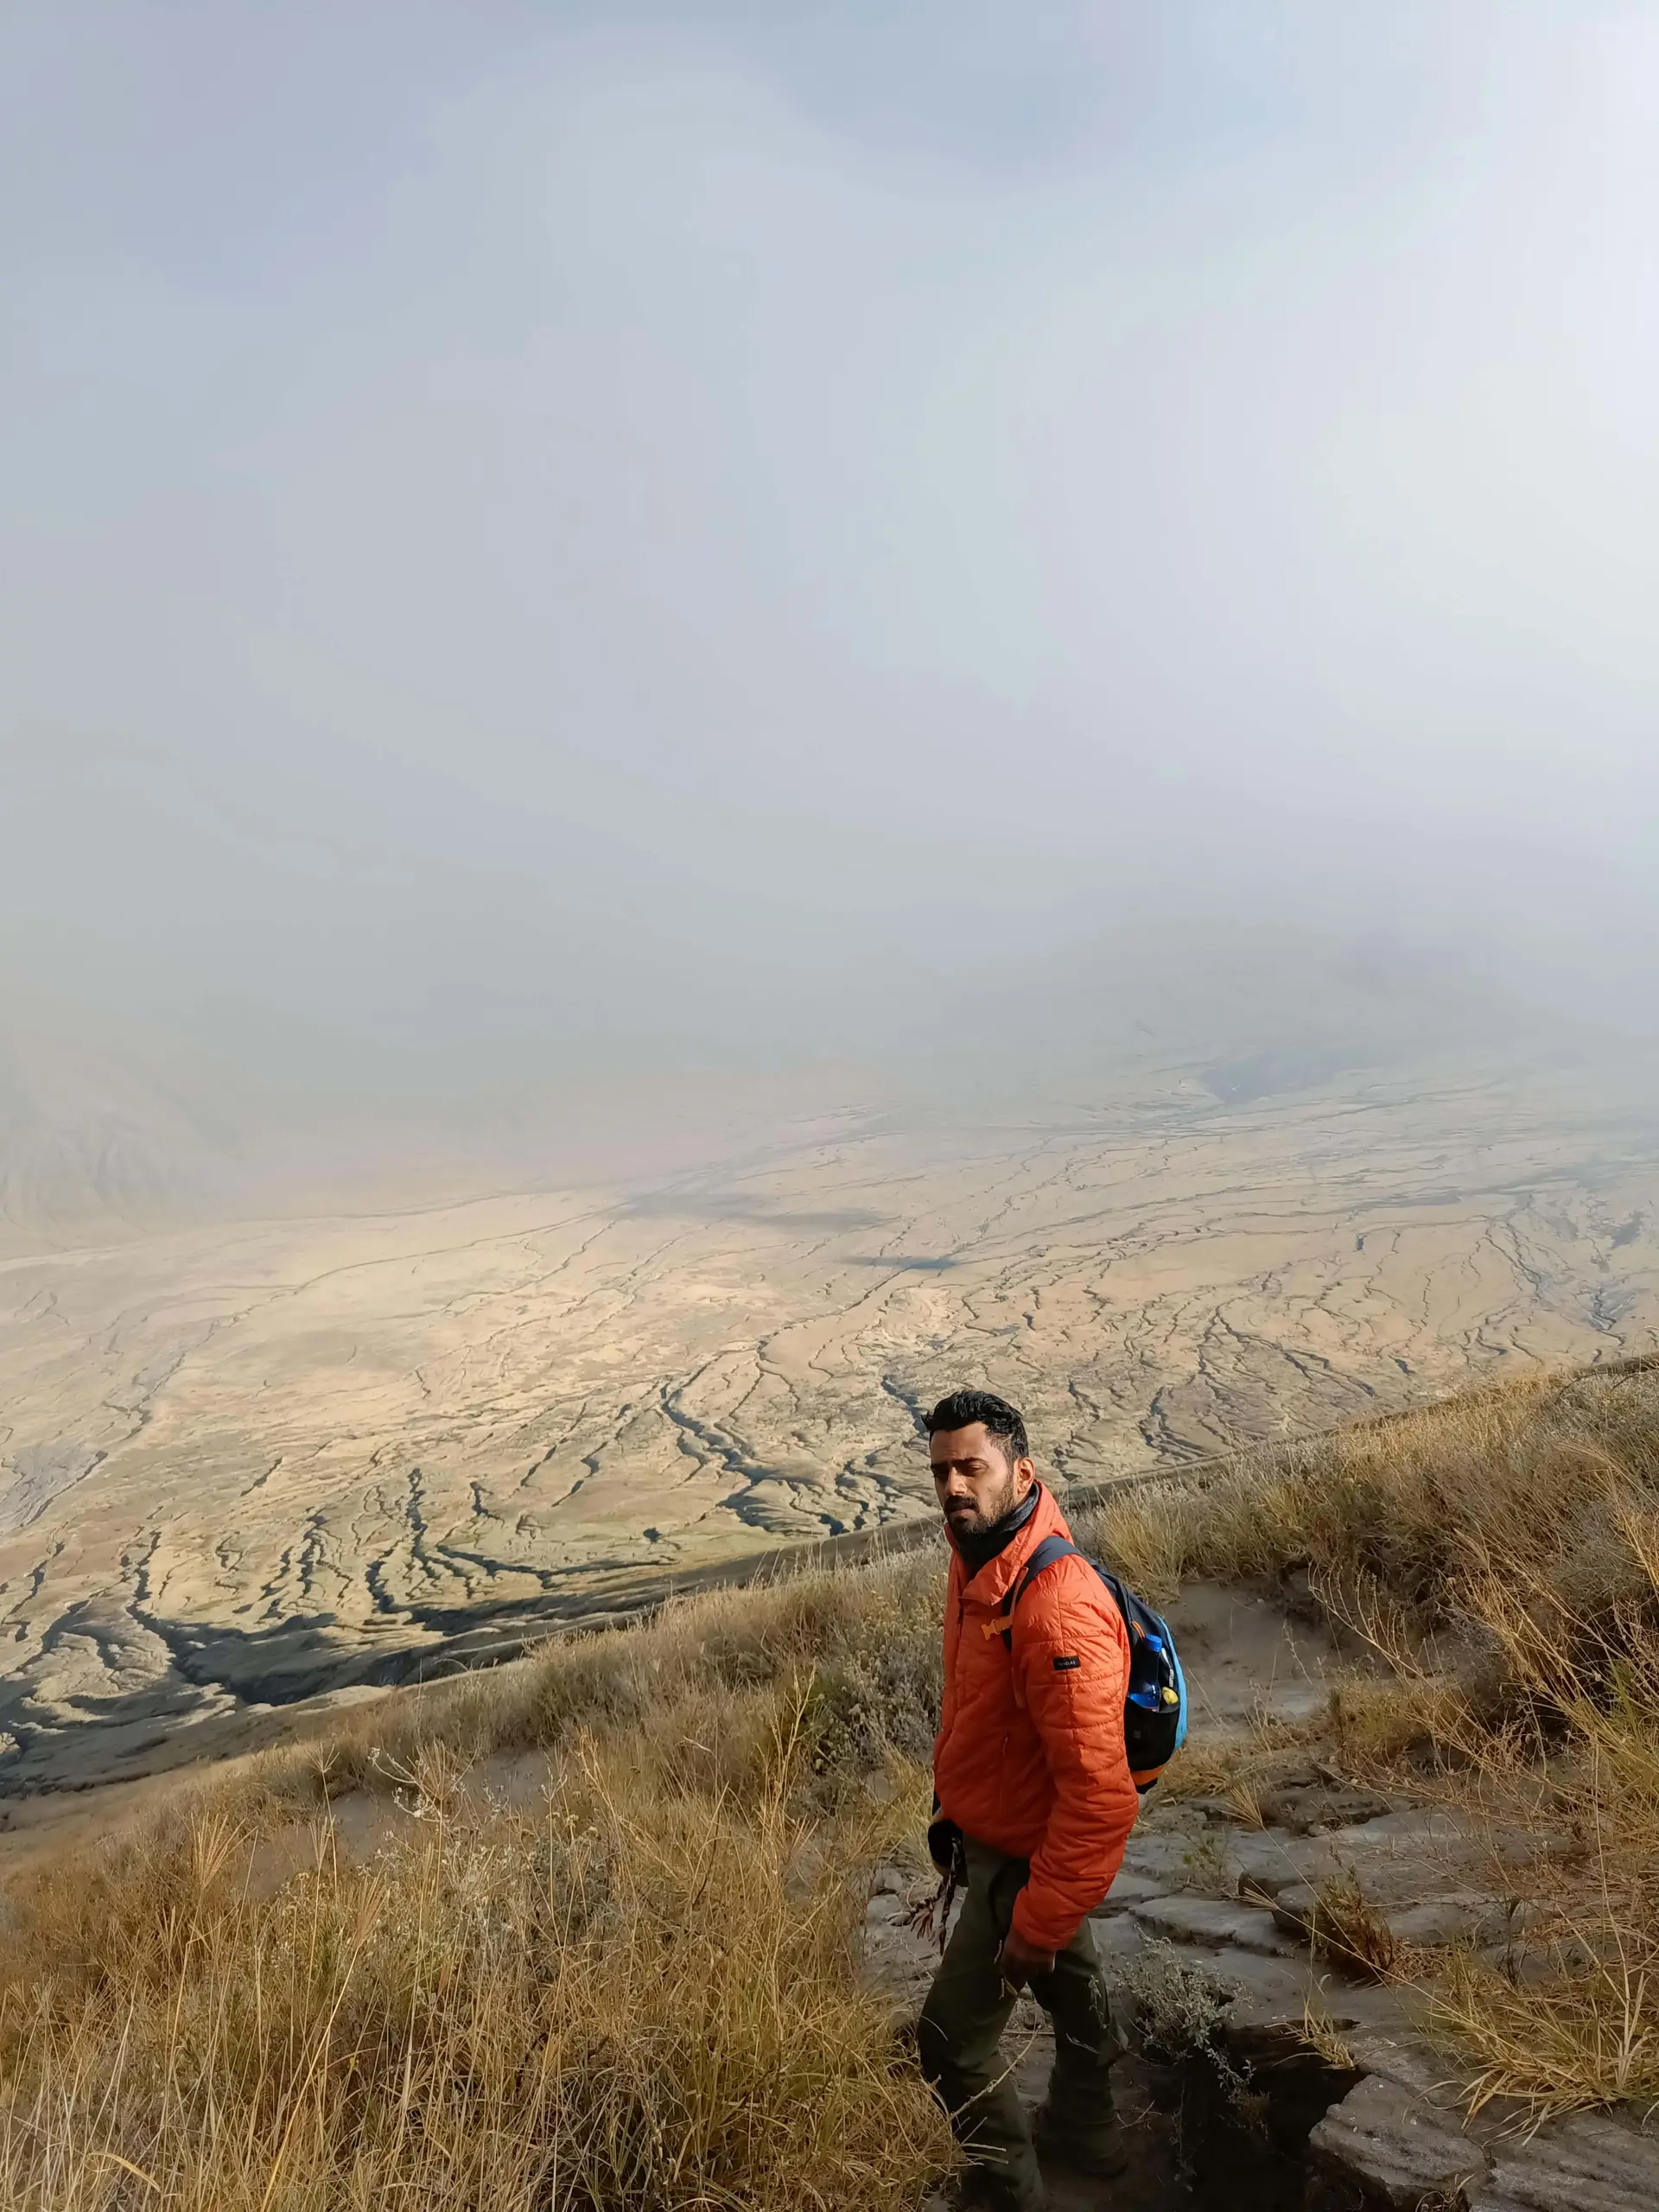 Descending from Ol Doinyo Lengai overlooking the rift valley